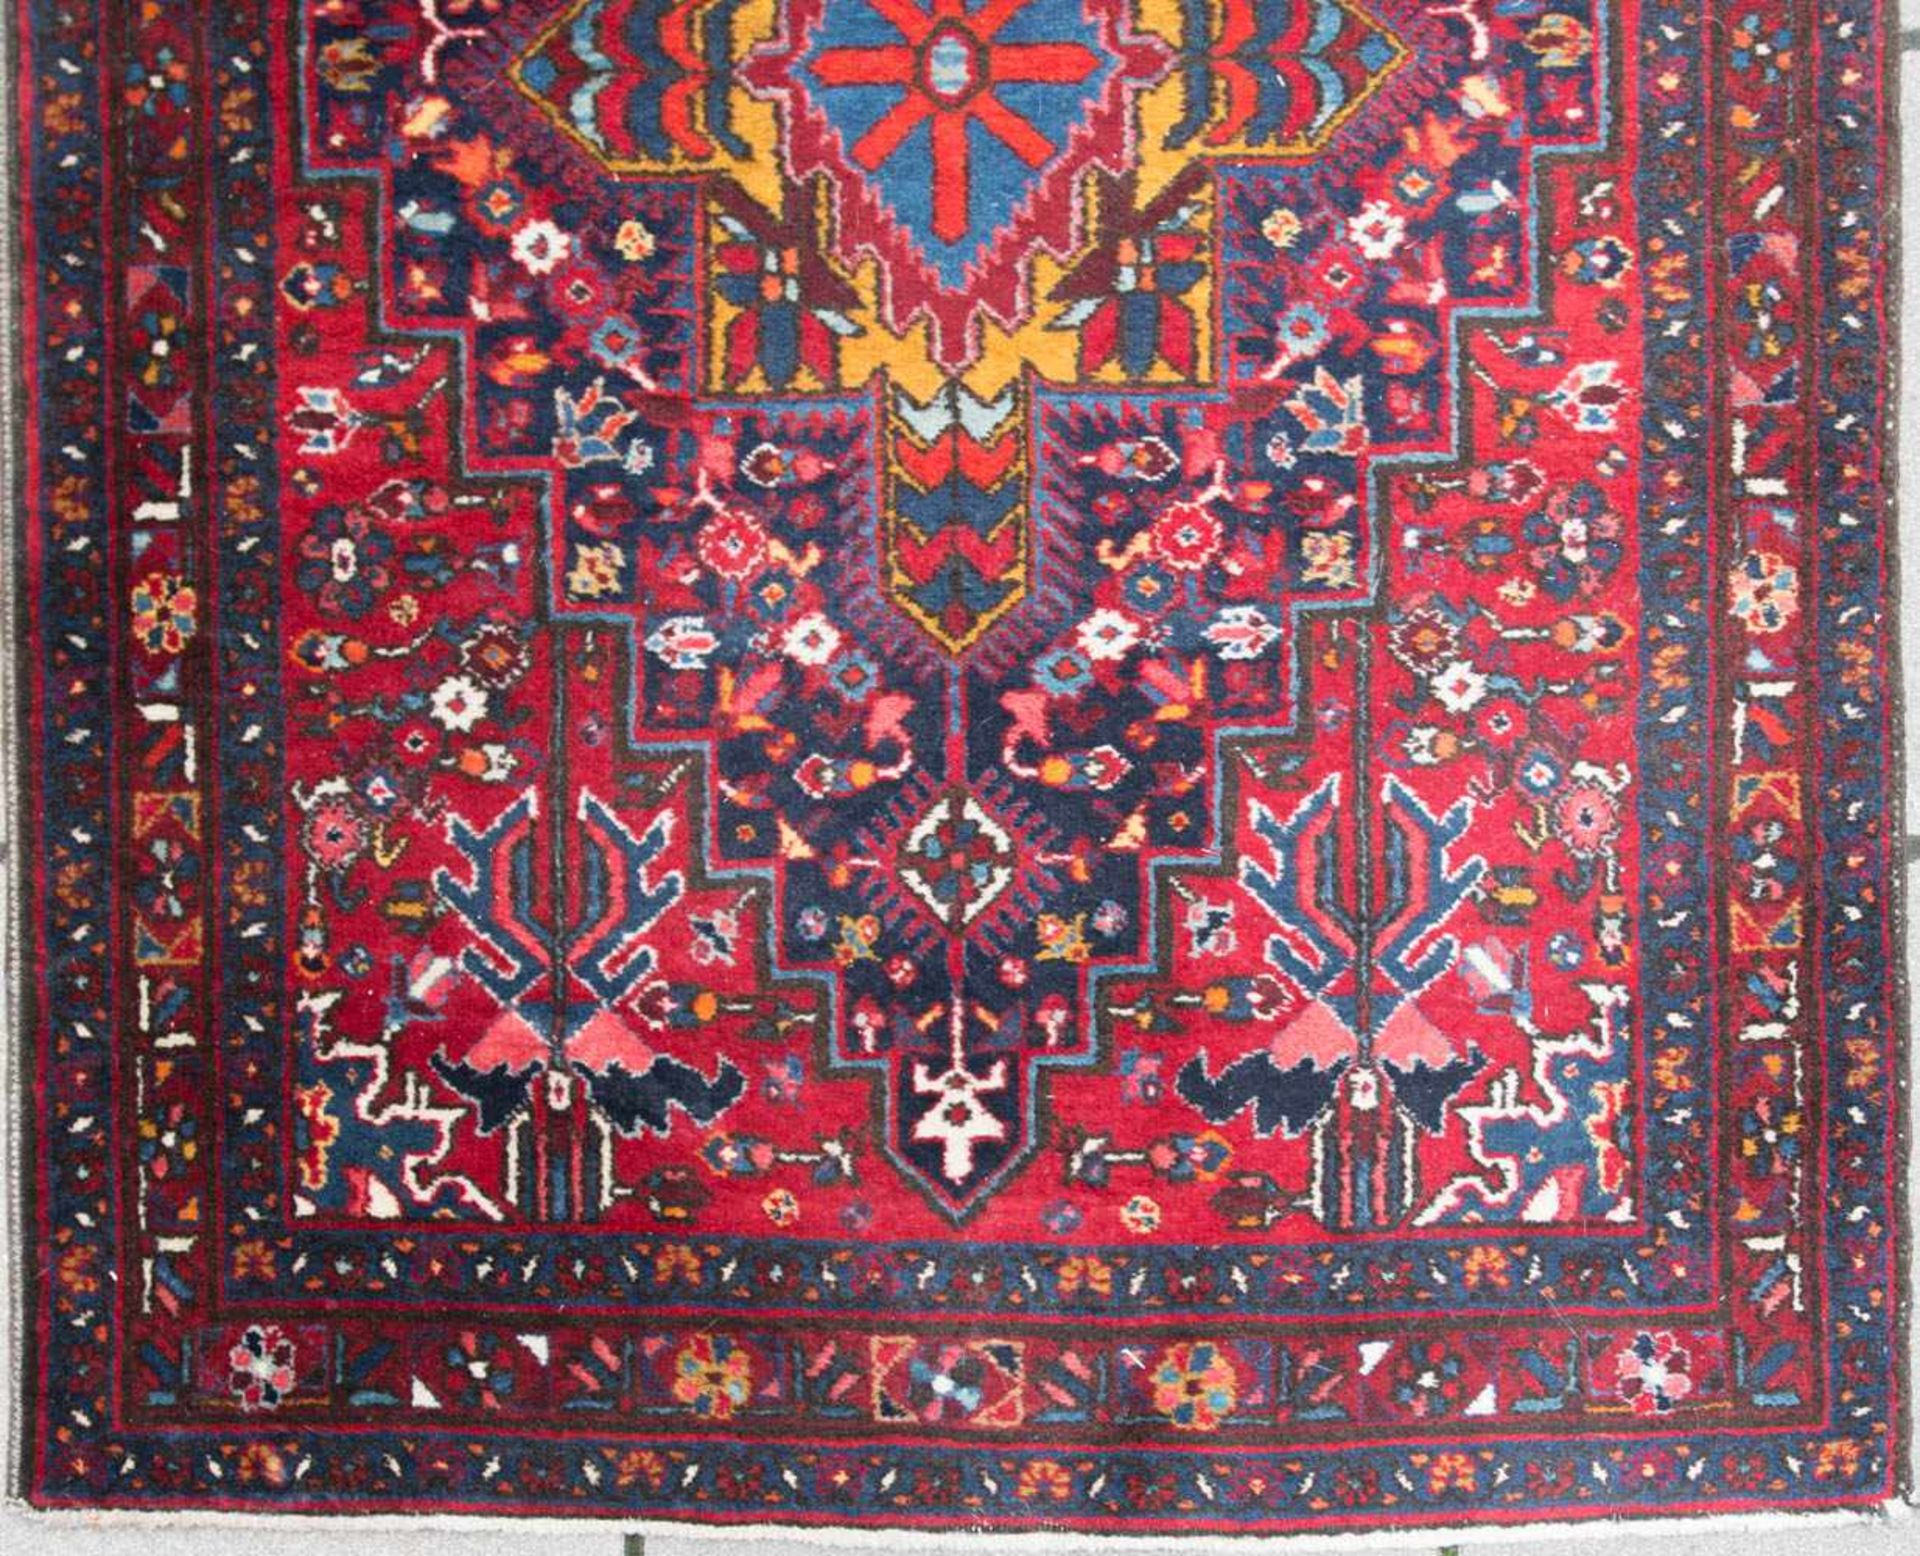 Hamadan Teppich, Baumwolle. - Bild 2 aus 6